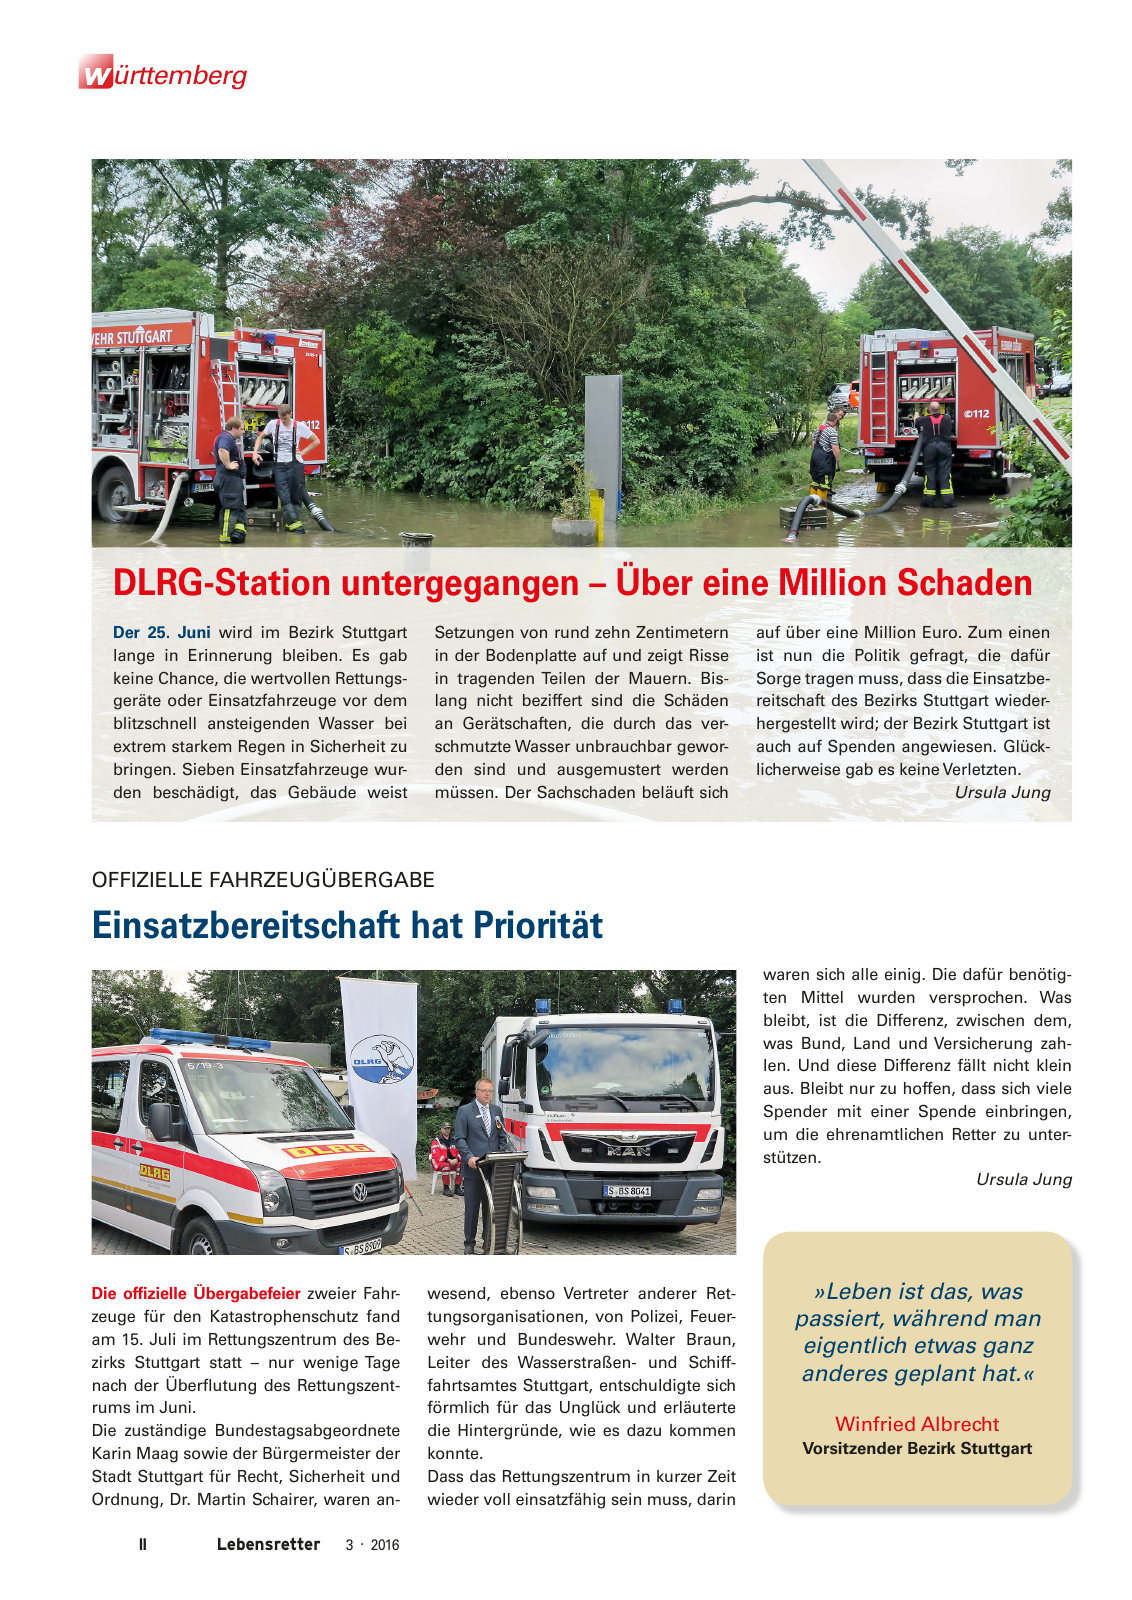 Vorschau Lebensretter 3/2016 - Regionalausgabe Württemberg Seite 4